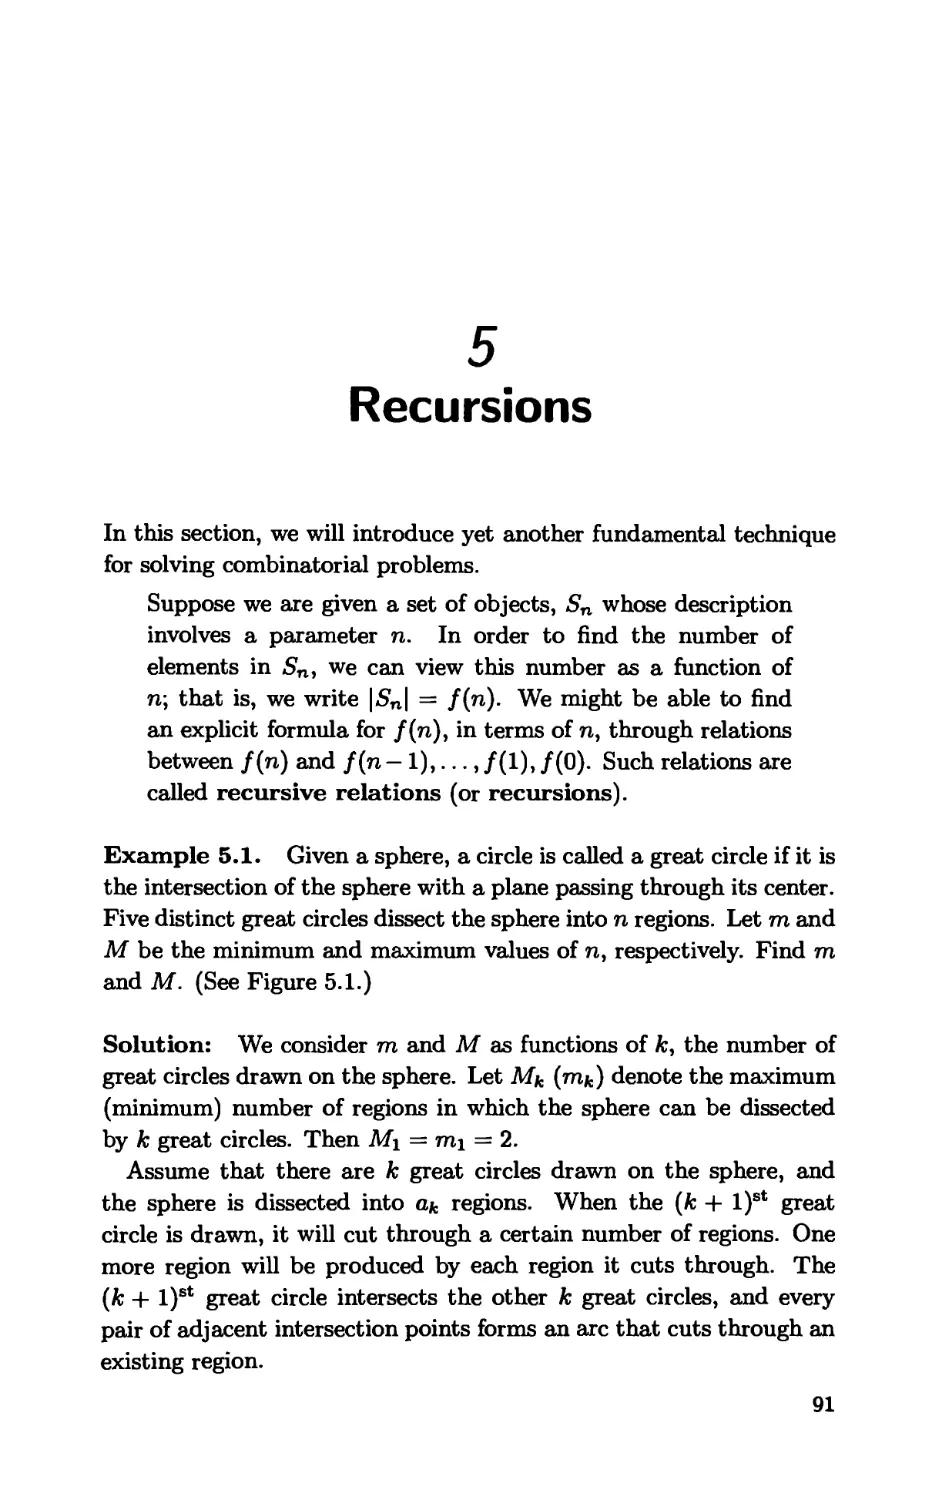 5. Recursions